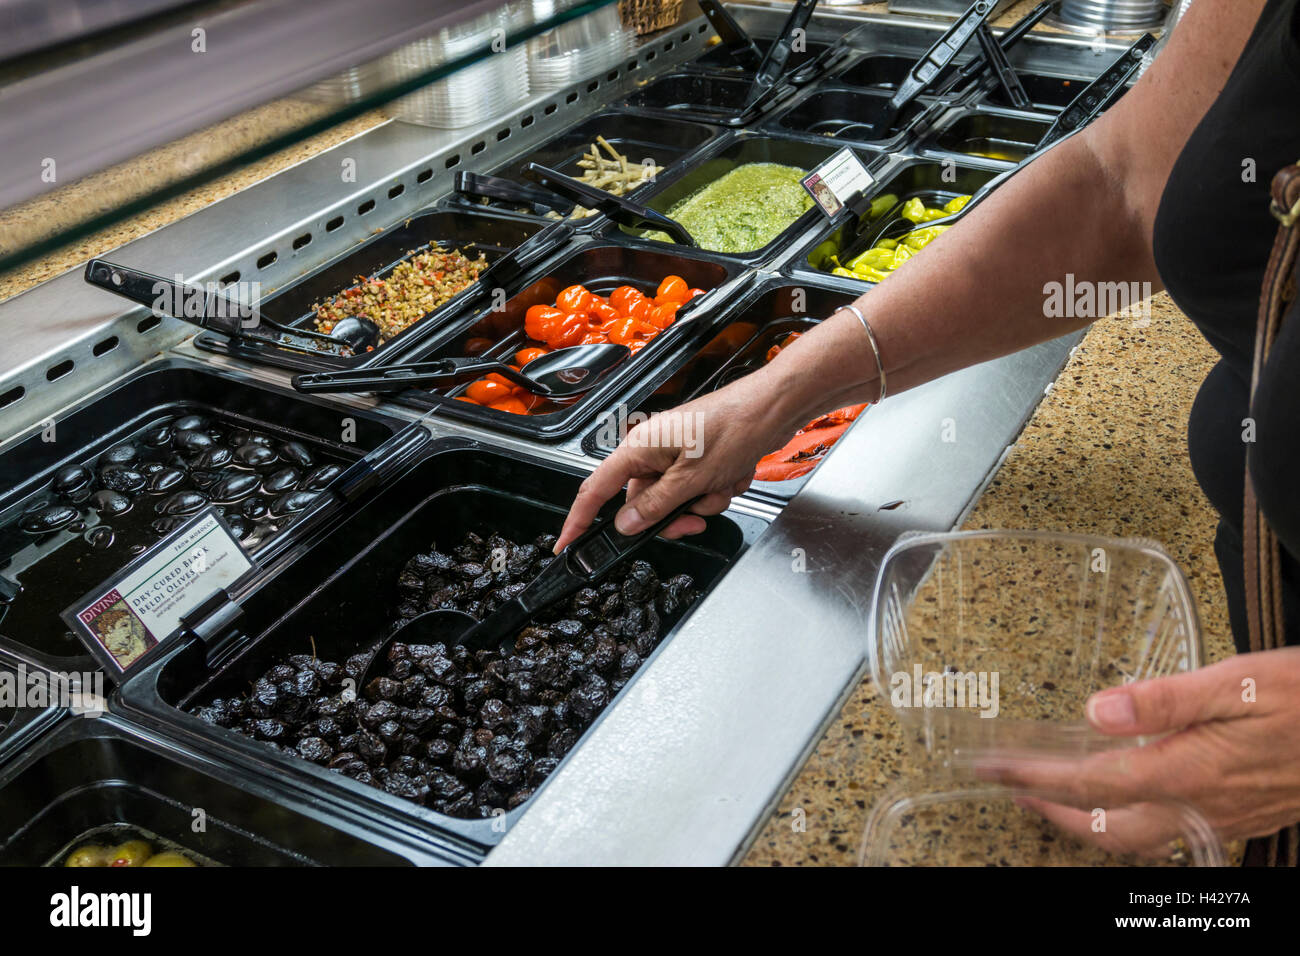 Frau eine Supermarkt-Self-service-Feinkostabteilung trocken geheilt schwarze Beldi Oliven auswählen. Stockfoto